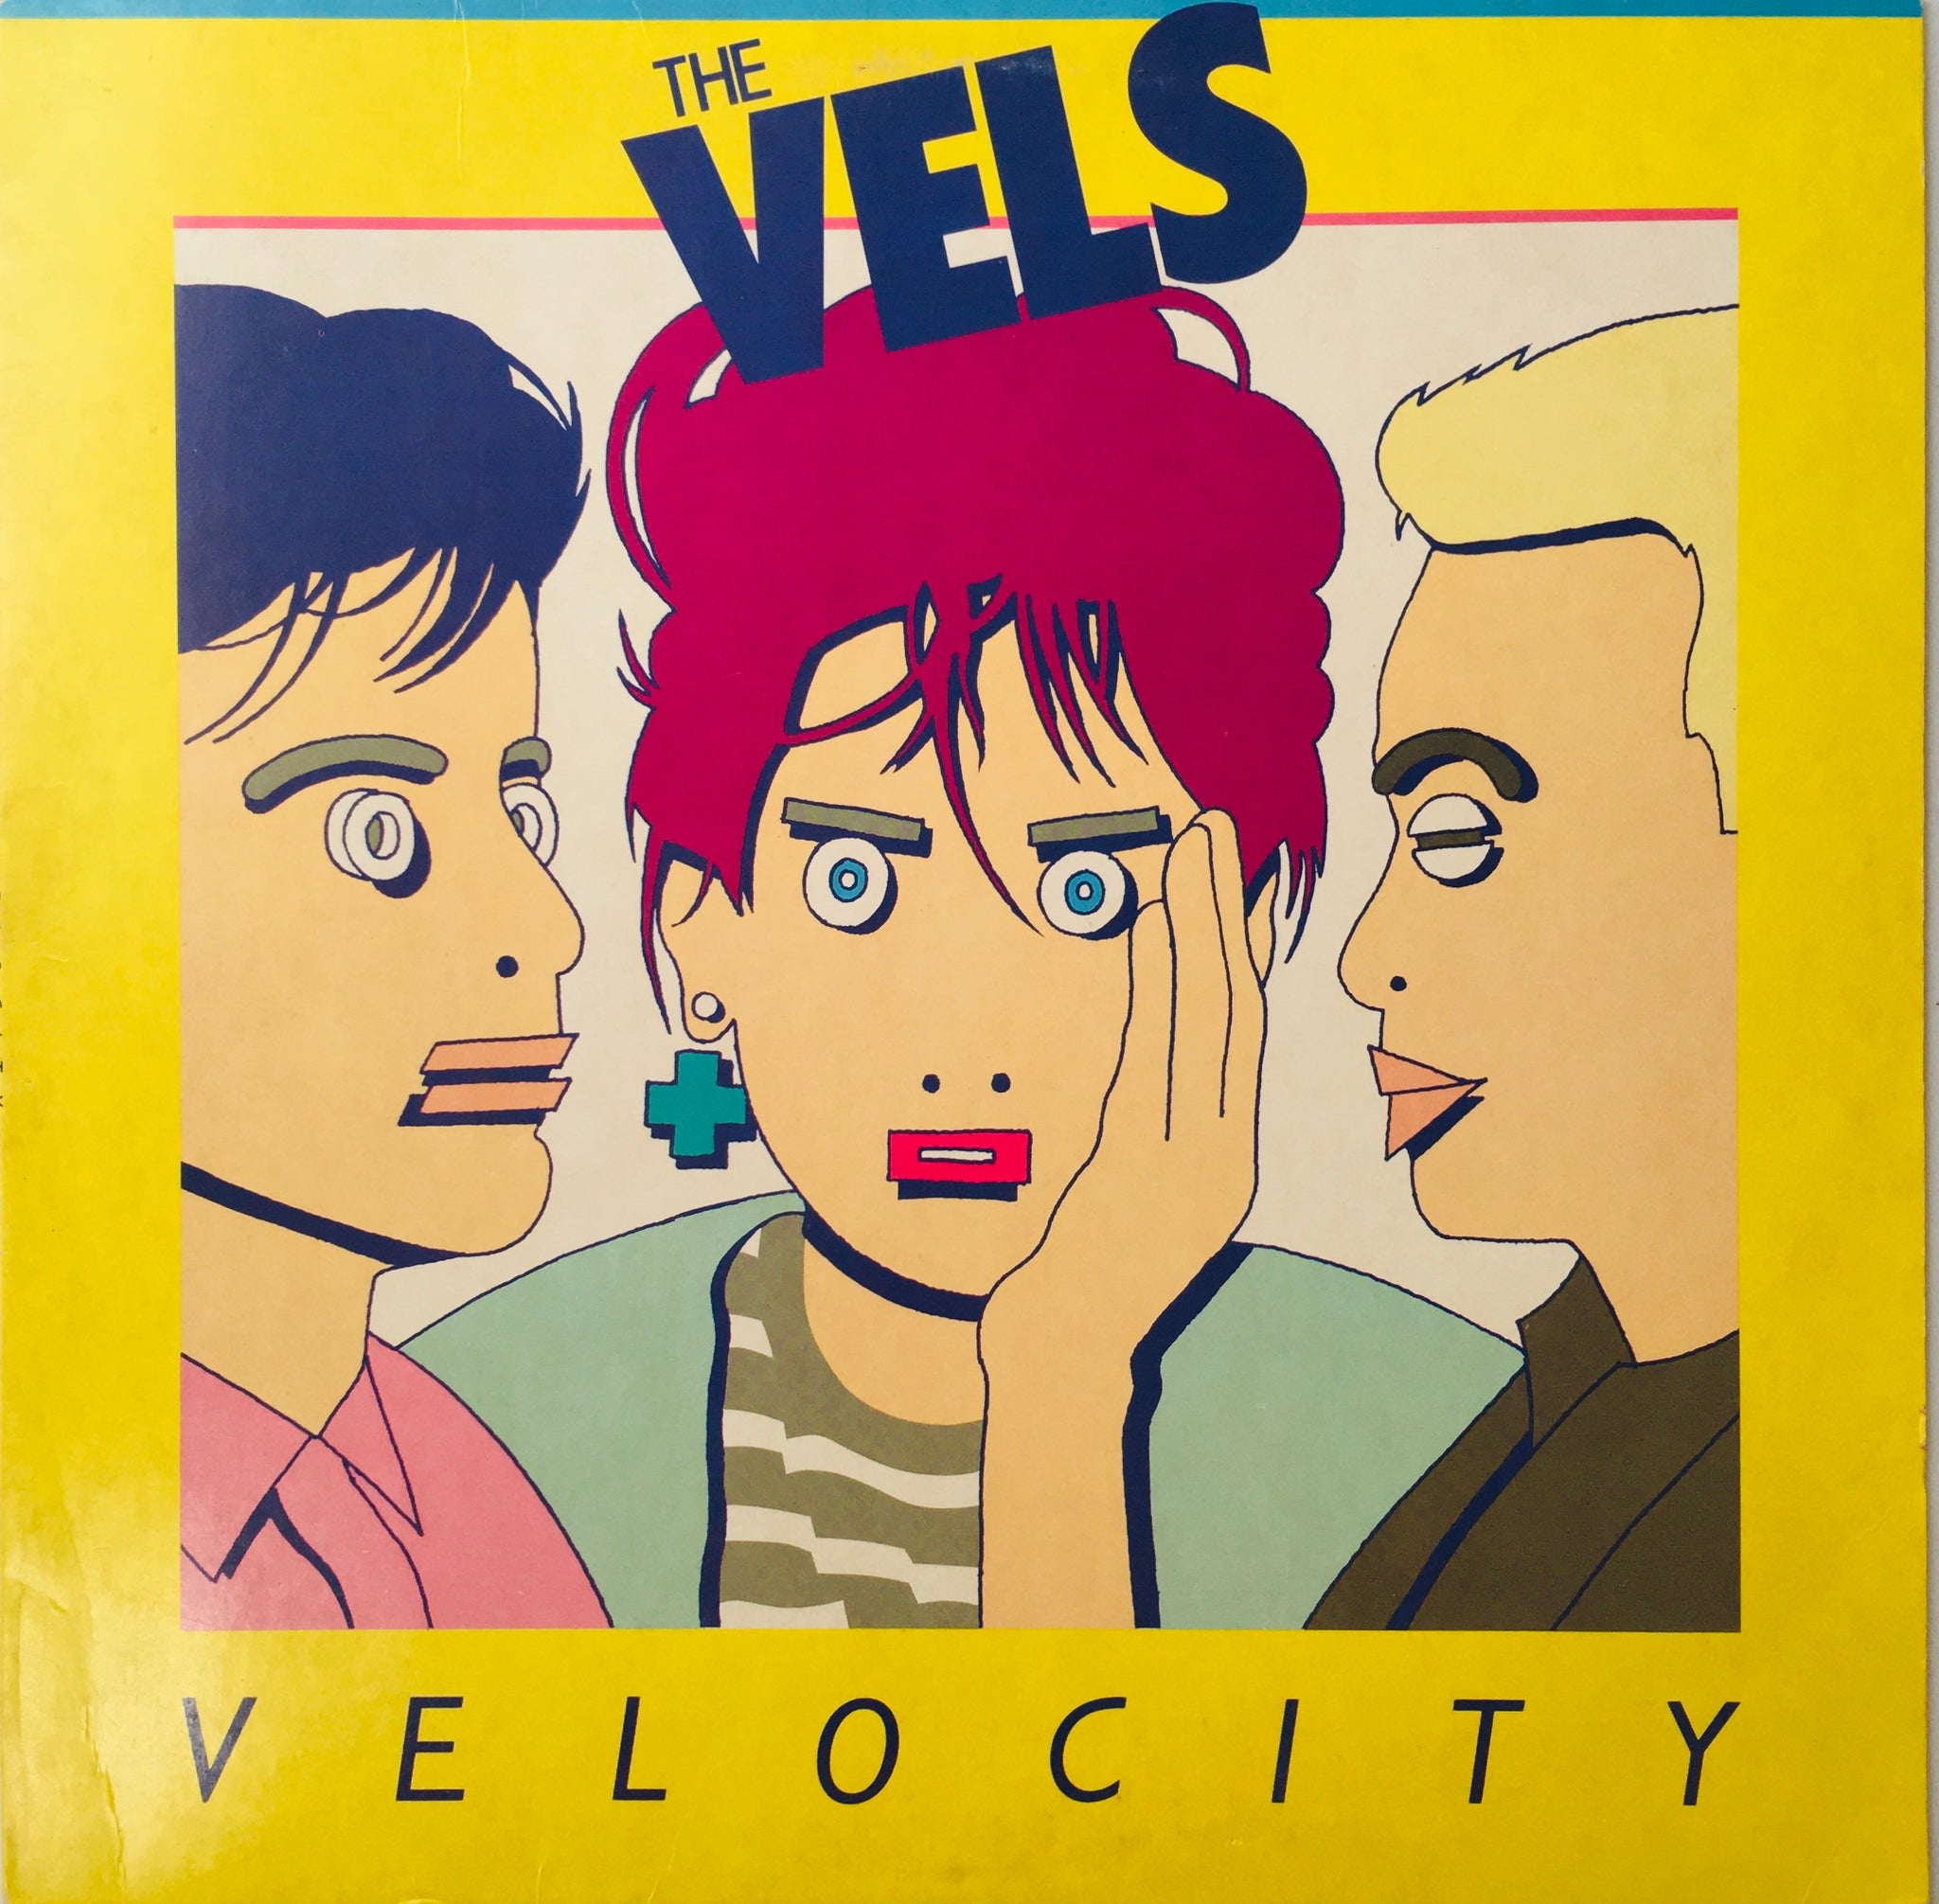 Vels "Velocity" LP (1984)